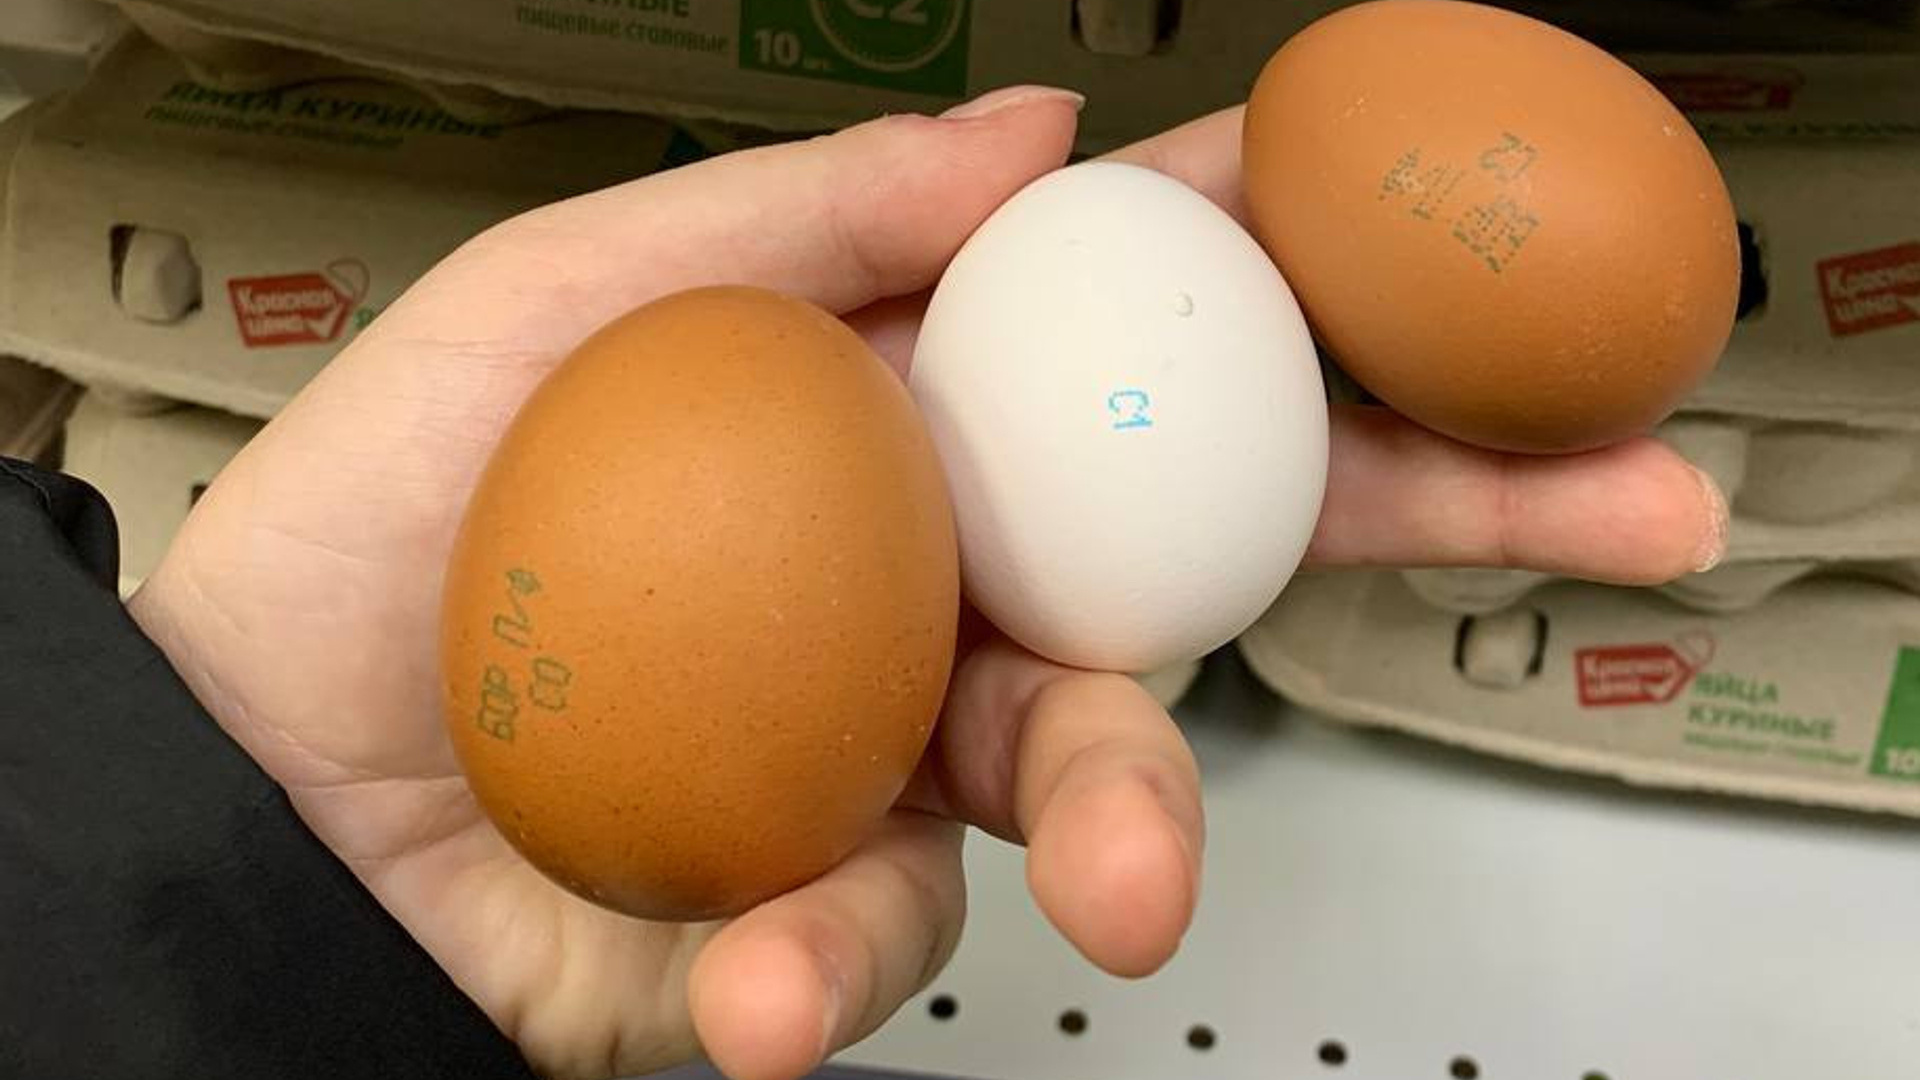 Удар по яйцам. Почему в магазинах «вылупились» трехзначные цены